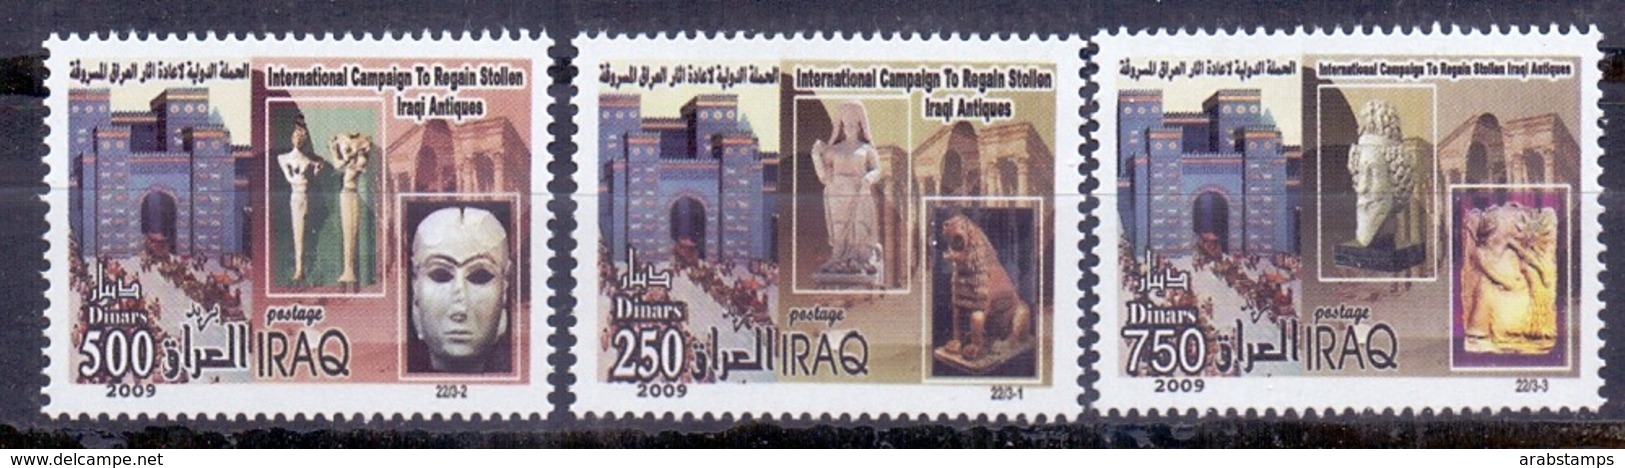 2009 IRAQ Complete Set 3 Values MNH S.G.No.2253-2255 - Iraq